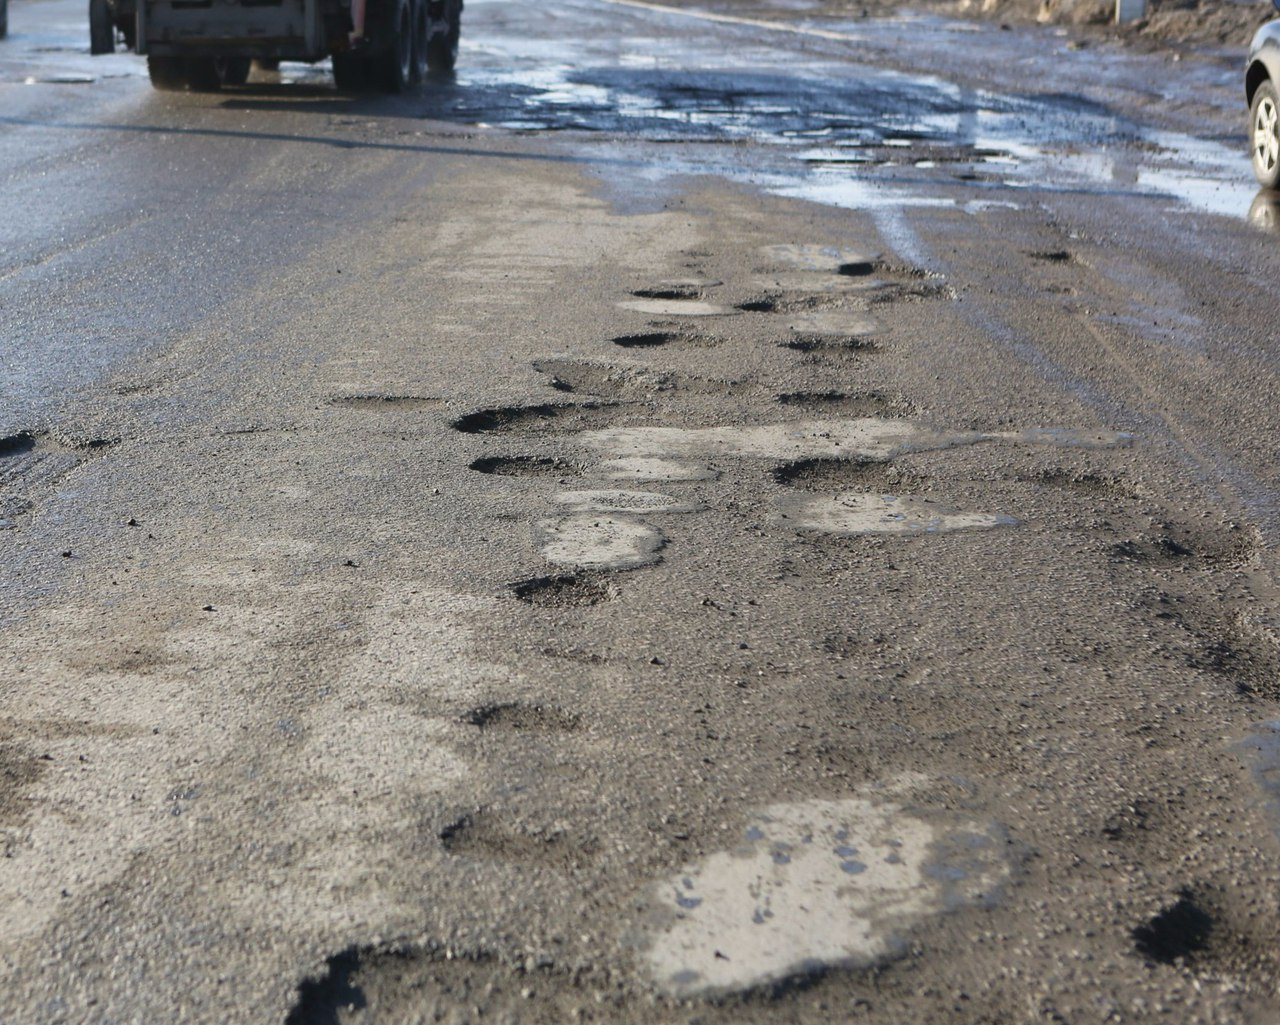 "Хватит это терпеть" - жители Соколовки пожаловались на разбитую дорогу